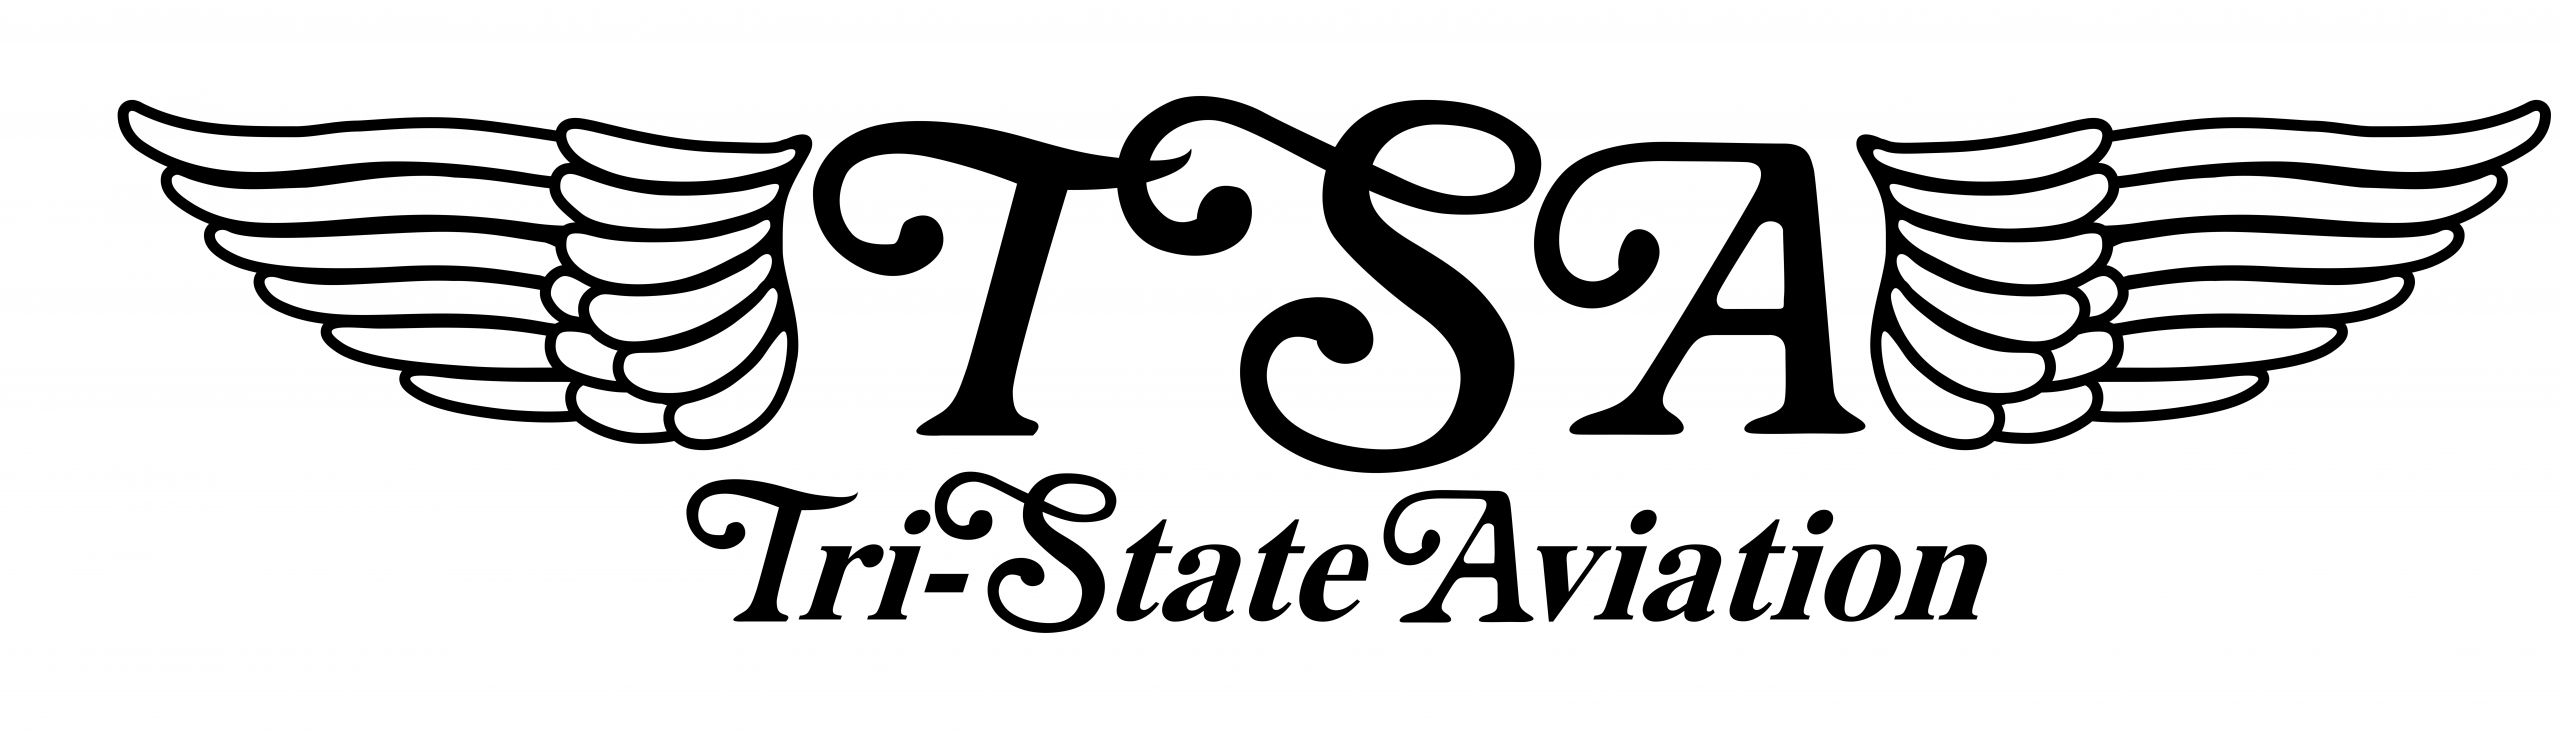 Tri-State Aviation